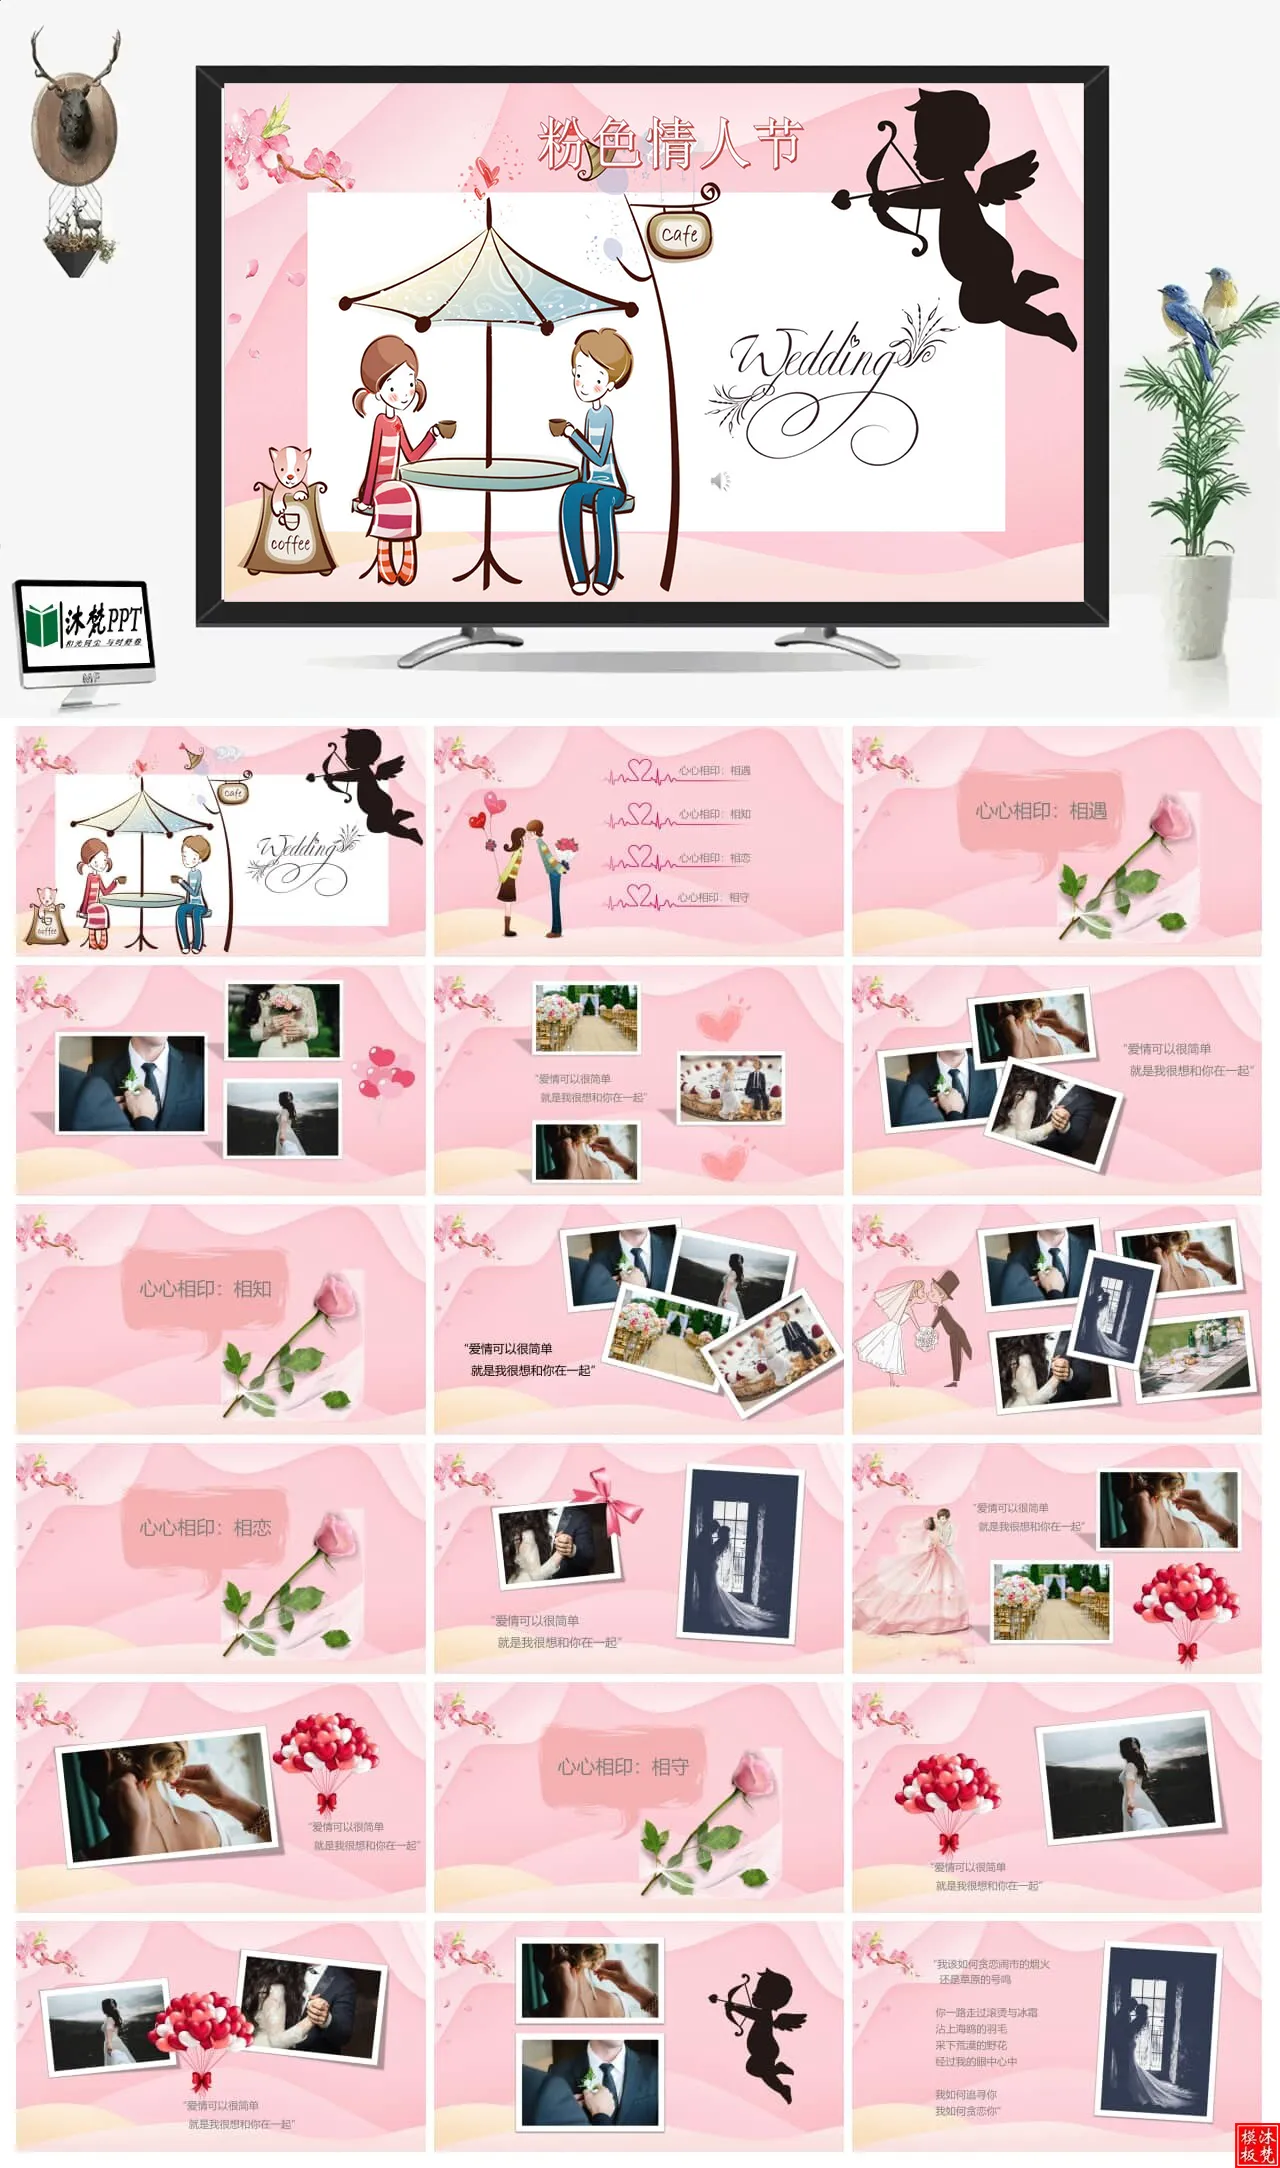 【0464】粉色浪漫风格情人节表白婚礼相册免费PPT模板